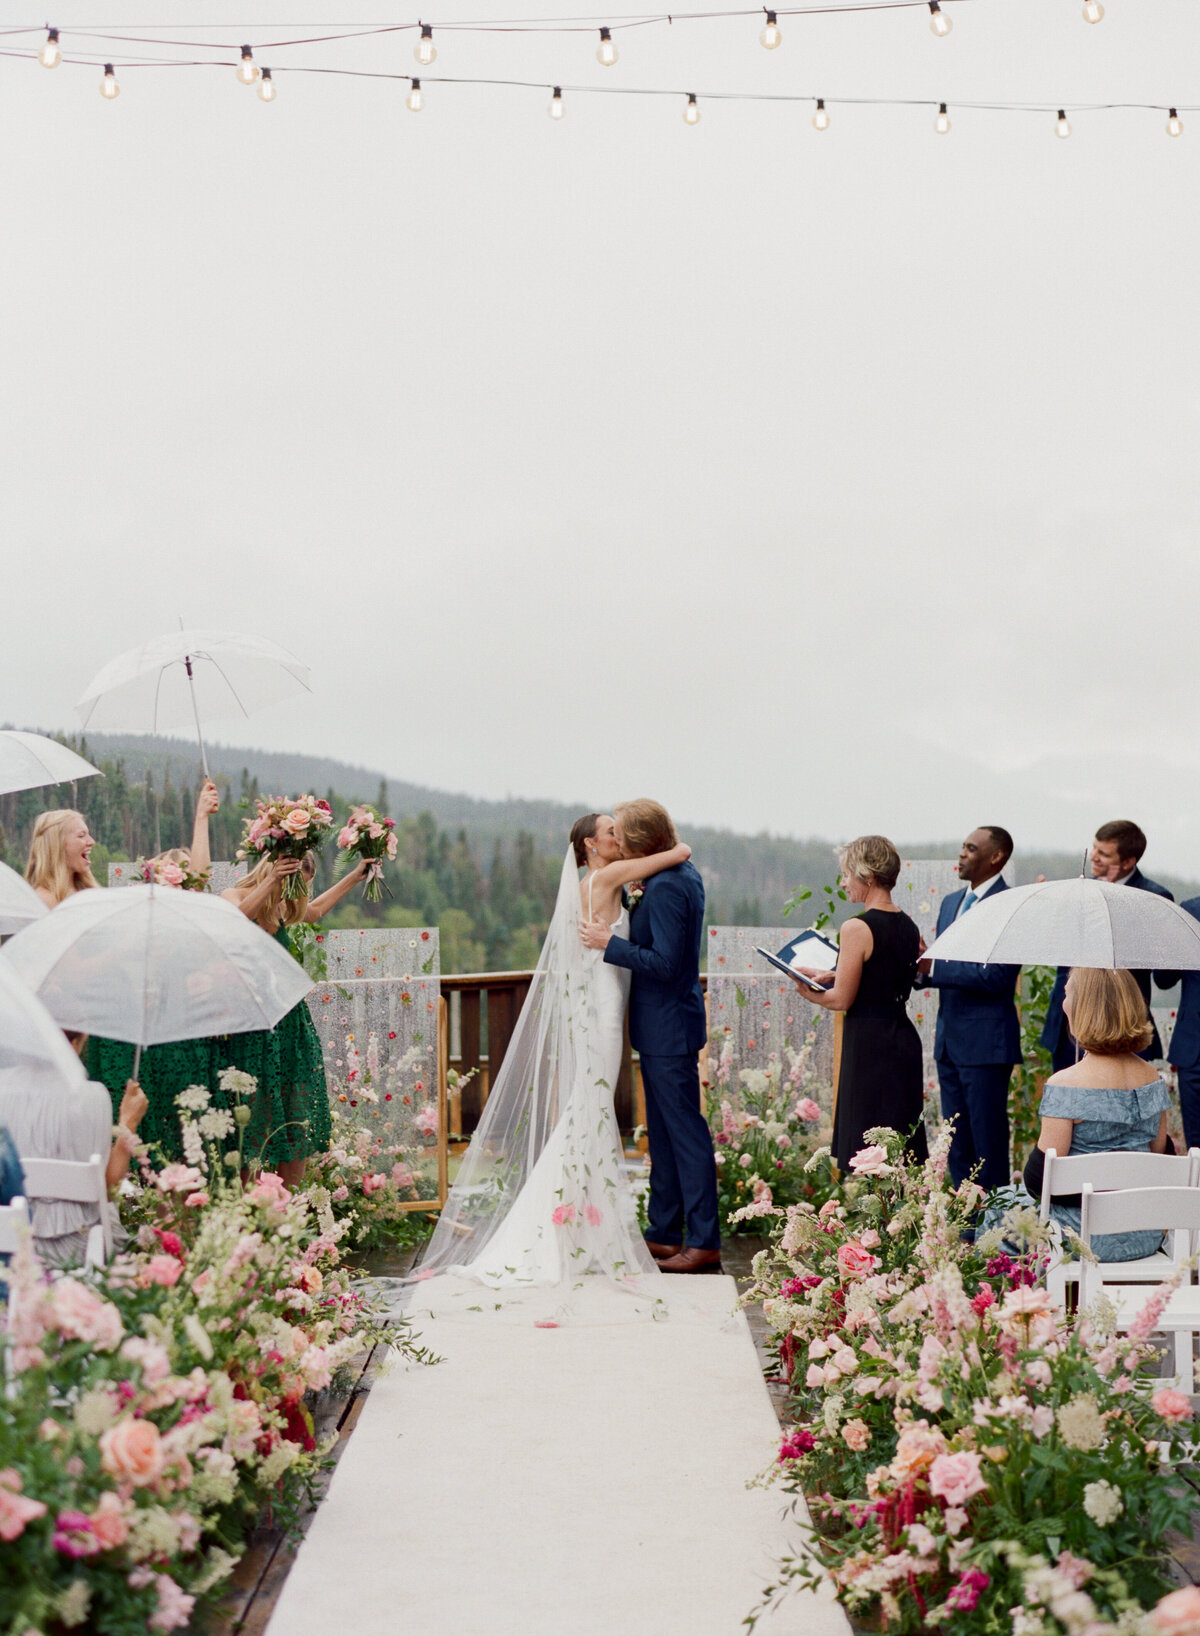 Logan & Ben - Fashion-Forward Mountaintop Wedding in Telluride, Colorado-25